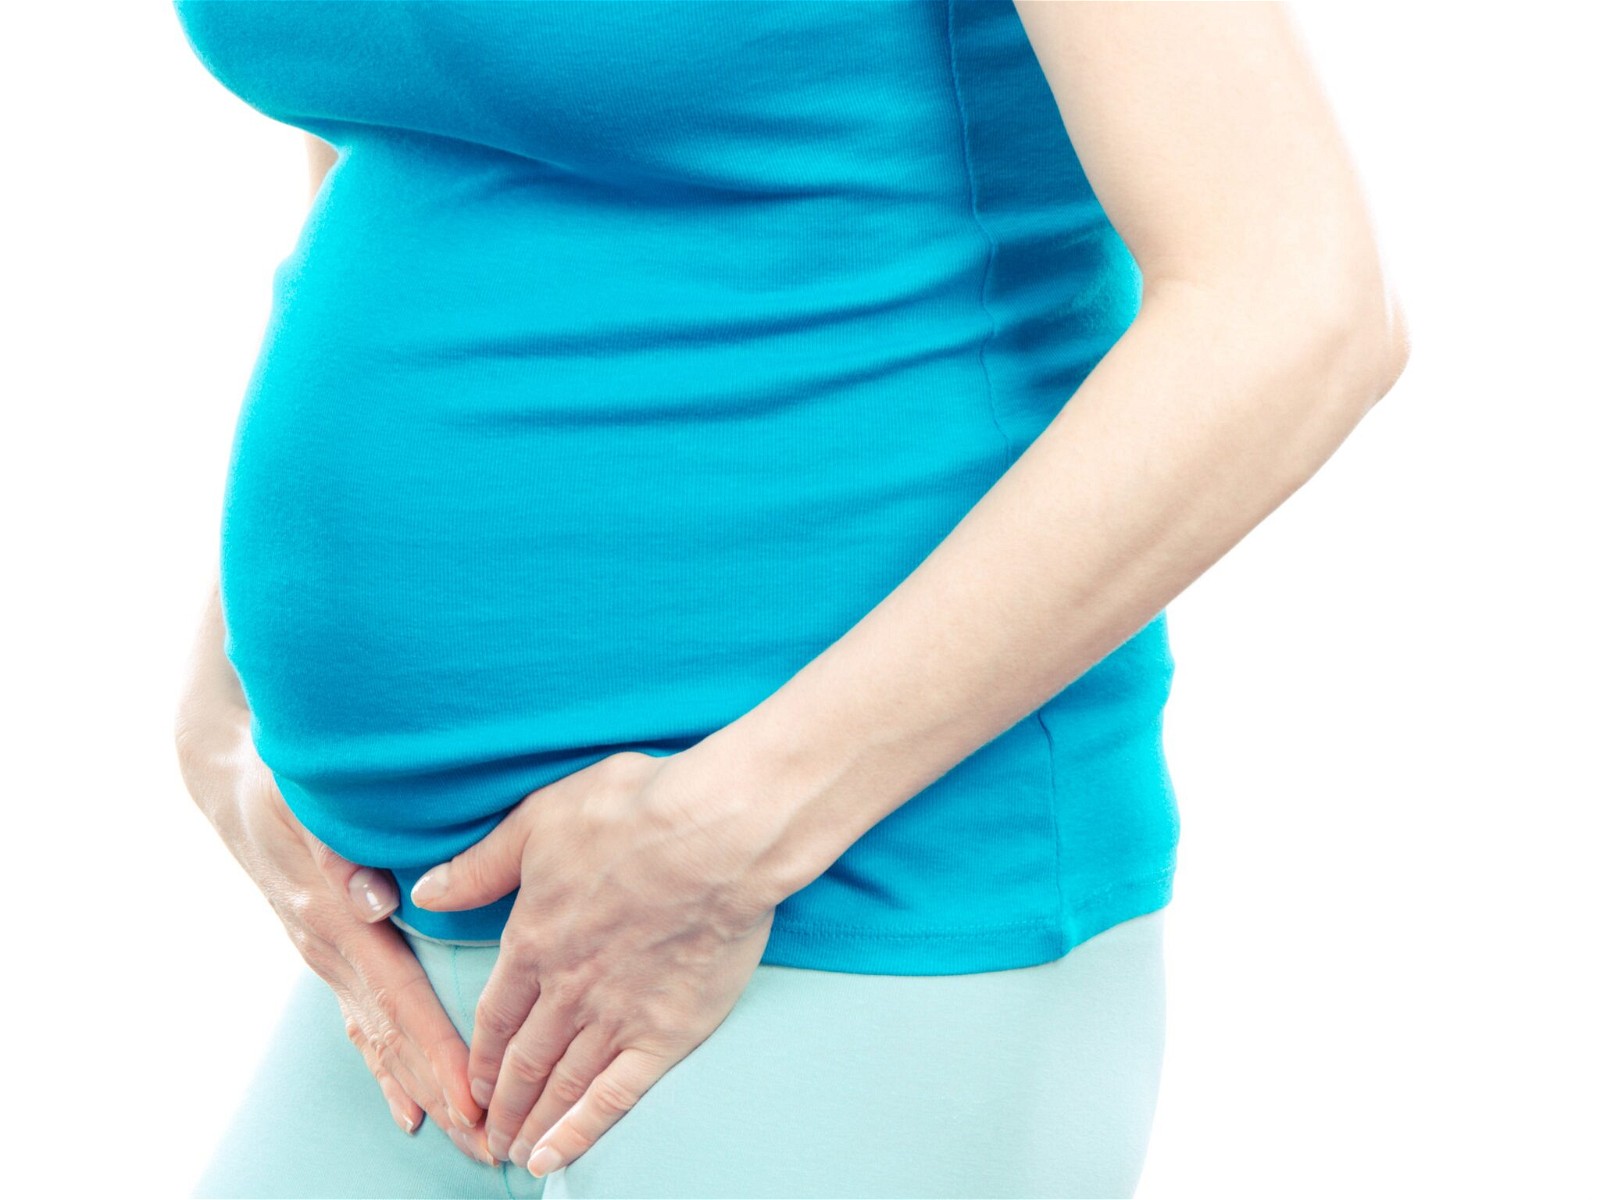 Niệu đạo bị kích ứng là một trong những nguyên nhân khiến mẹ bầu sau sinh phải đối mặt với hiện tượng tiểu buốt